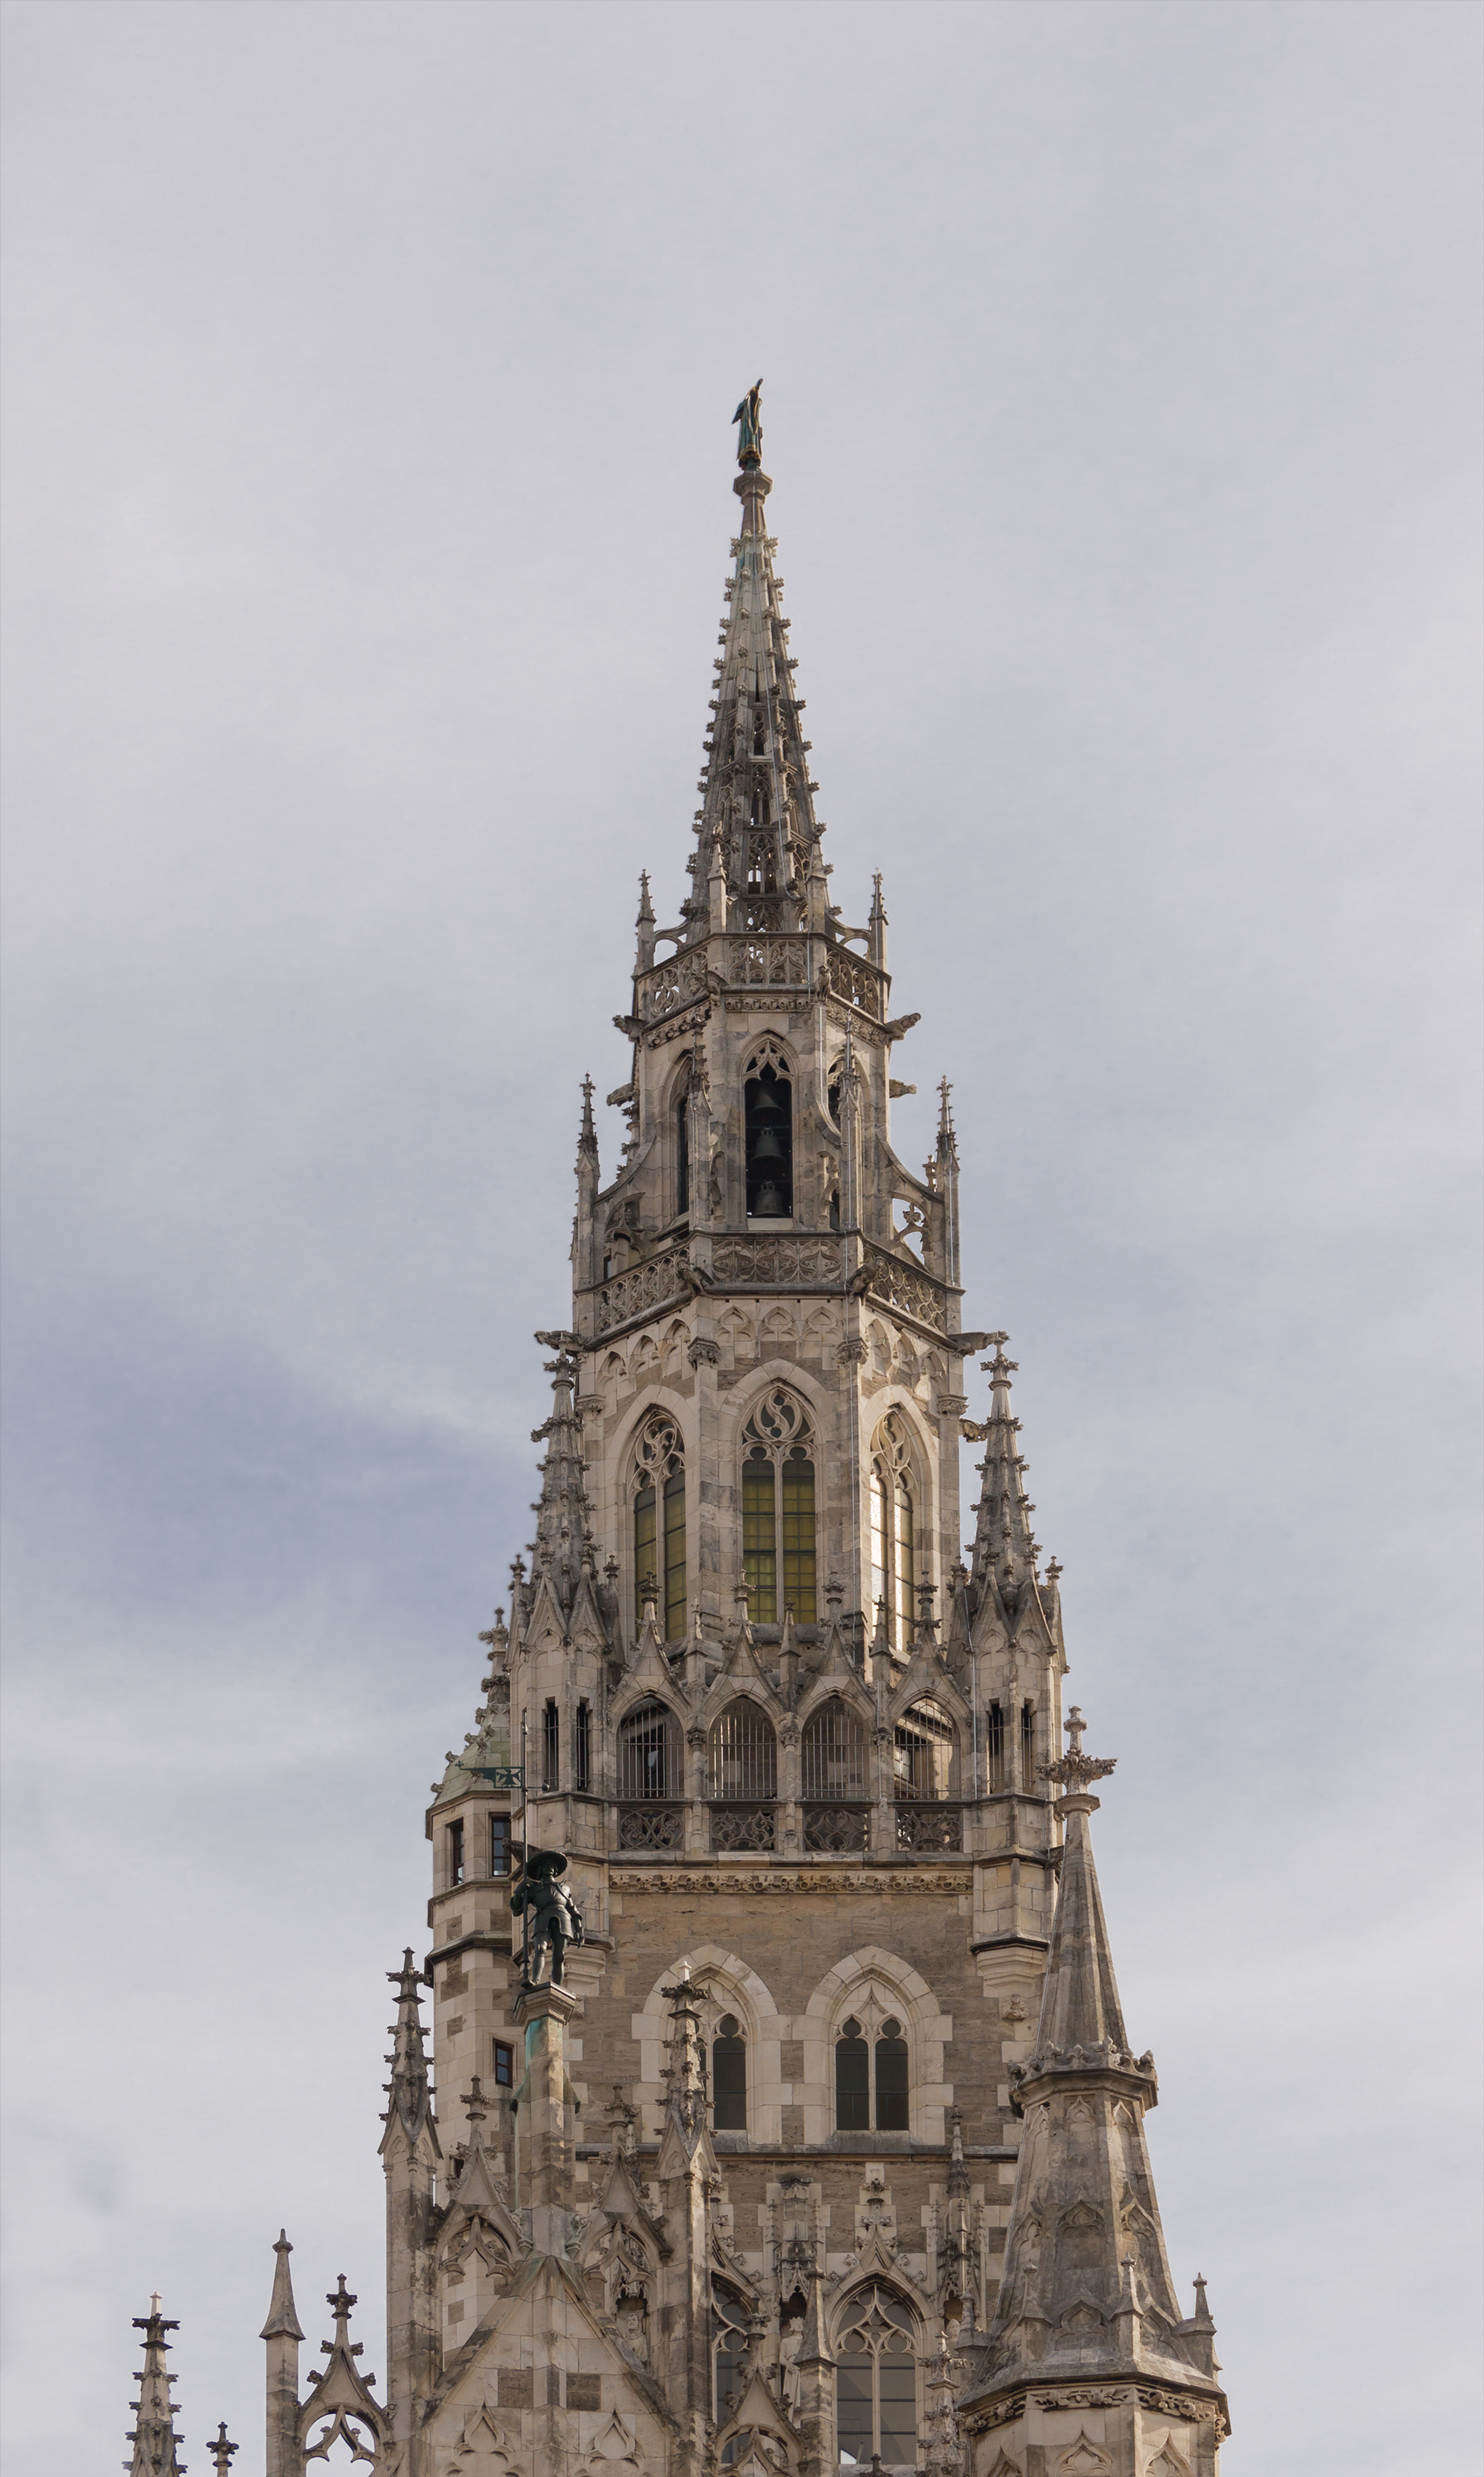 Top spire city hall Munich